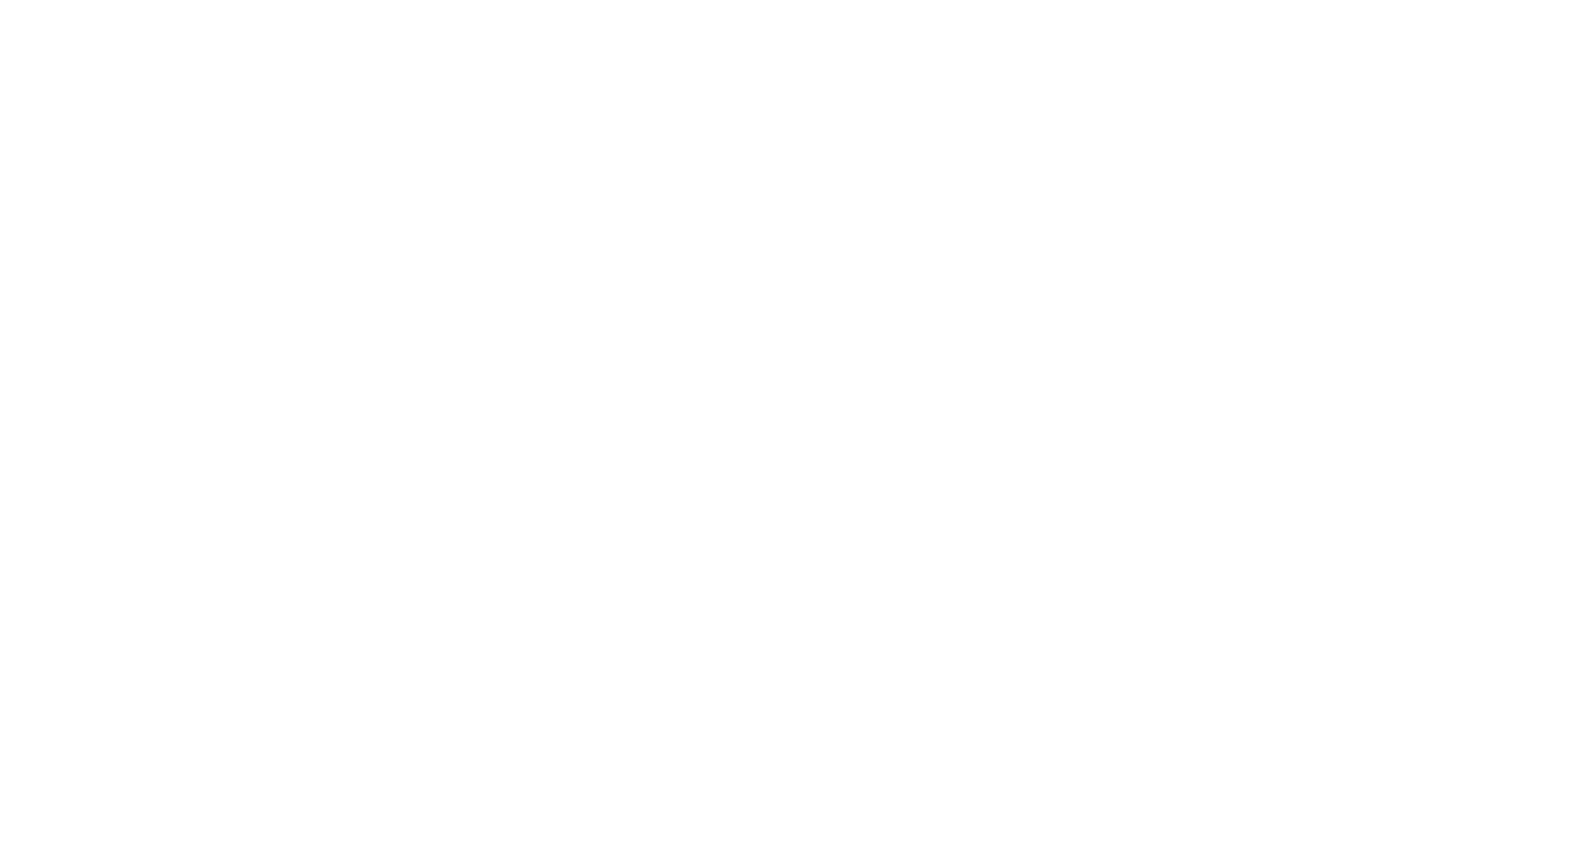 East Japan Railway logo pour fonds sombres (PNG transparent)